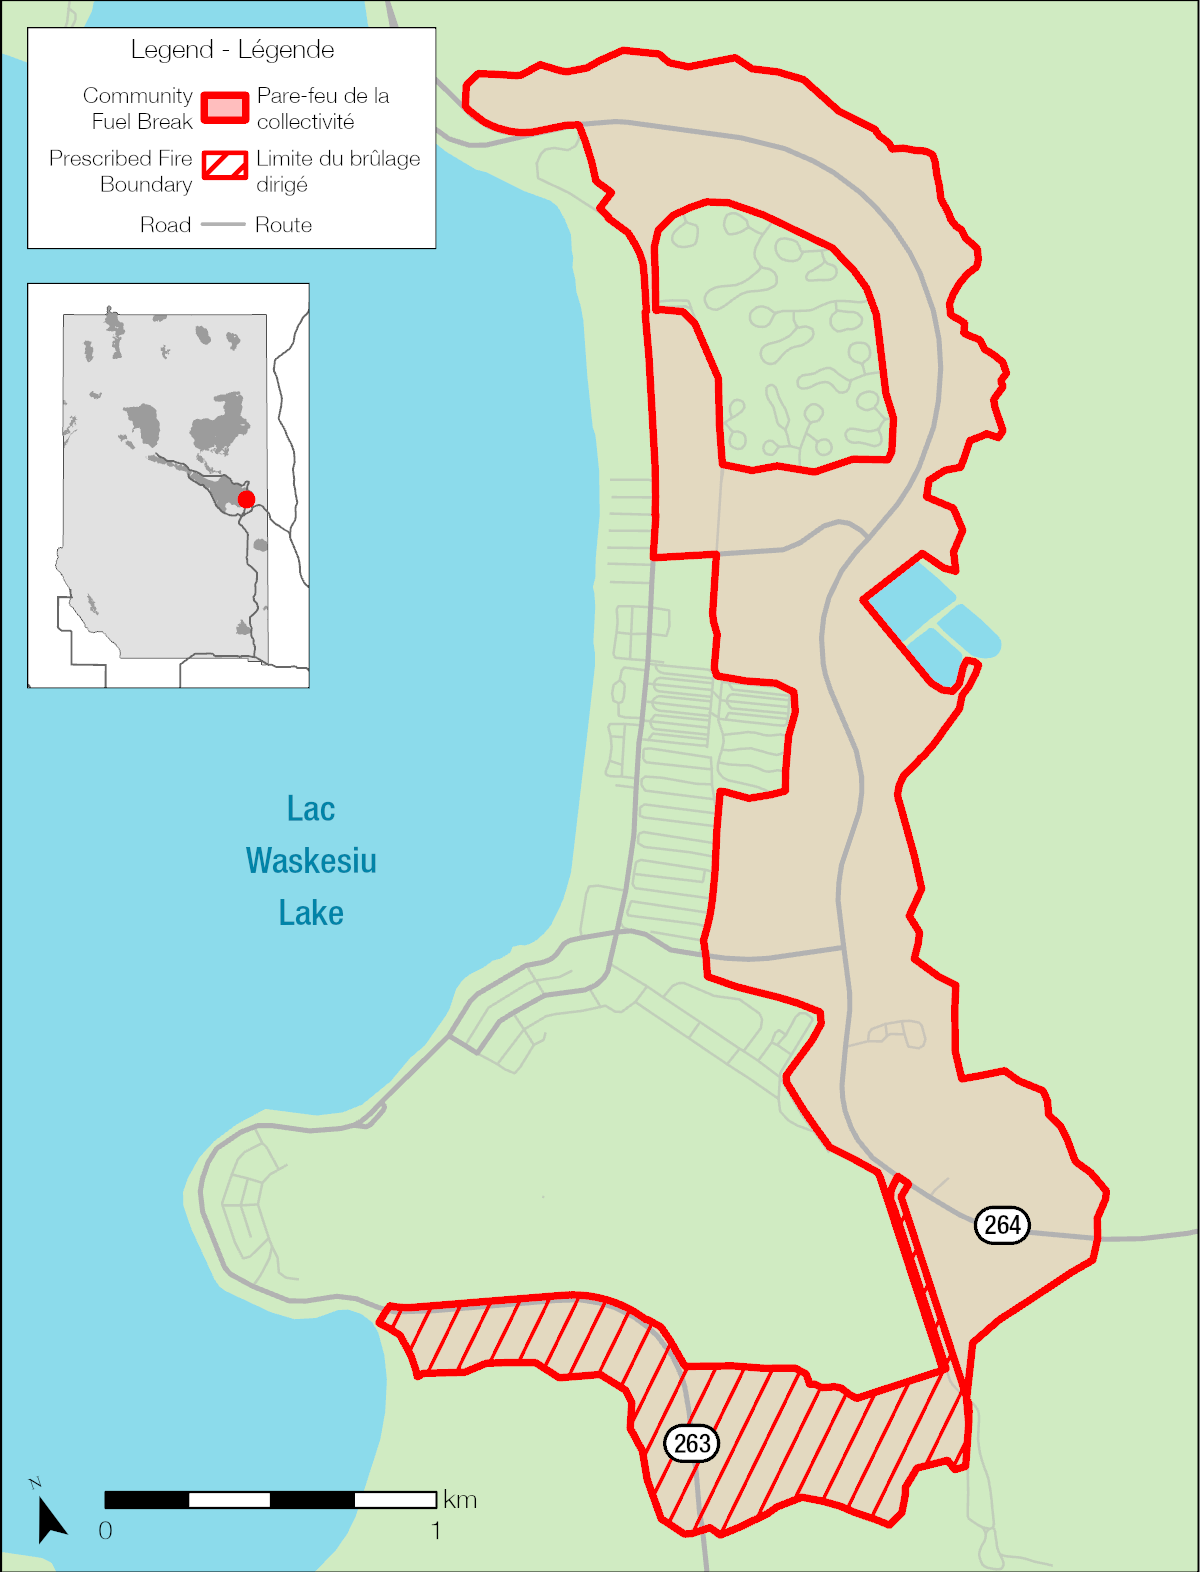 Cette carte montre le lotissement urbain de Waskesiu dans le parc national de Prince Albert avec le pare-feu de Waskesiu. La carte contient une légende et une carte du parc national de Prince Albert en médaillon qui démontre la position de Waskesiu dans le parc dans le coin supérieur gauche. Il y a une échelle de 0 à 1 dans le coin inferieur gauche. Elle note les routes de Waskesiu ainsi que les autoroutes 263 et 264. La carte illustre la position du pare-feu, qui est au nord, à l’est et au sud du lotissement urbain de Waskesiu avec lac Waskesiu à l’ouest. La limite de brulage dirigé est marquée au sud du lotissement urbain. 